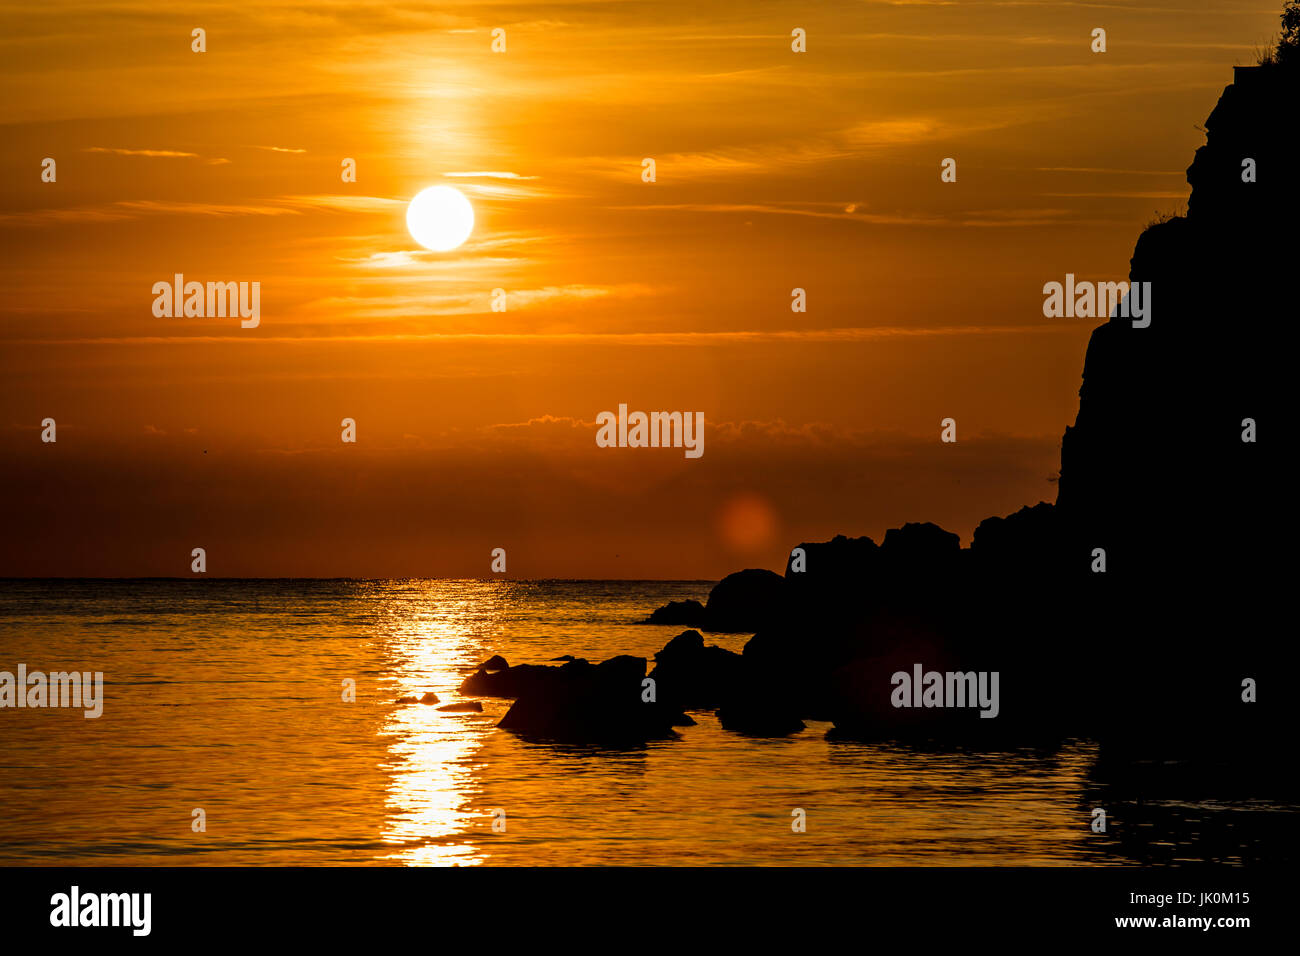 Sunrise at a sea coast Stock Photo